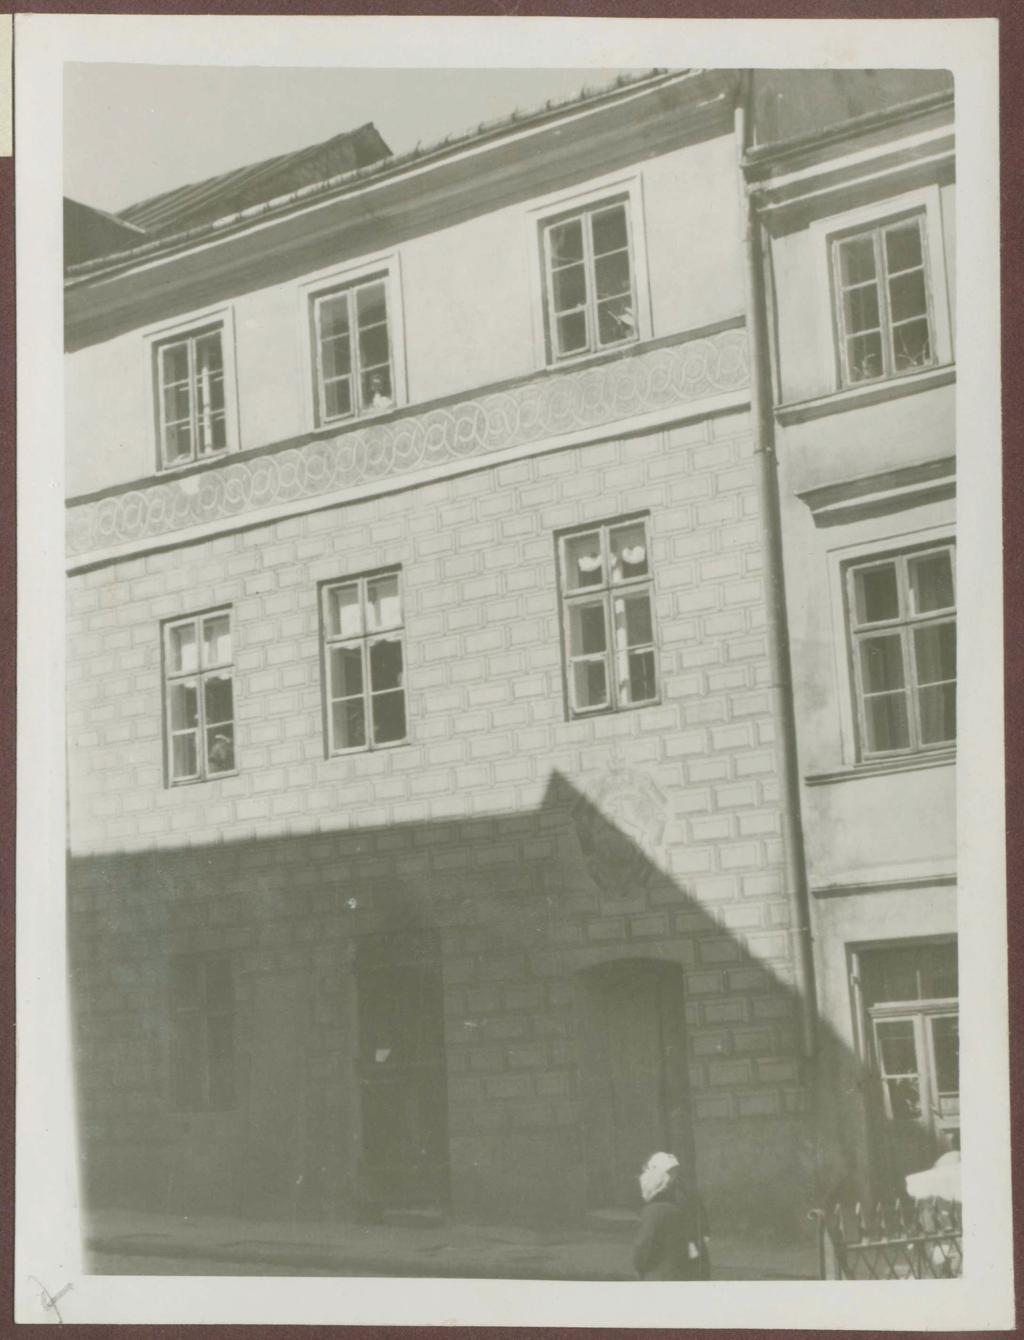 Fotografie przedwojenne/pre-war photographs: Grodzka 16, po odnowieniu w 1939 roku, zdjęcie z albumu Zdjęcia z Robót konserwatorskich